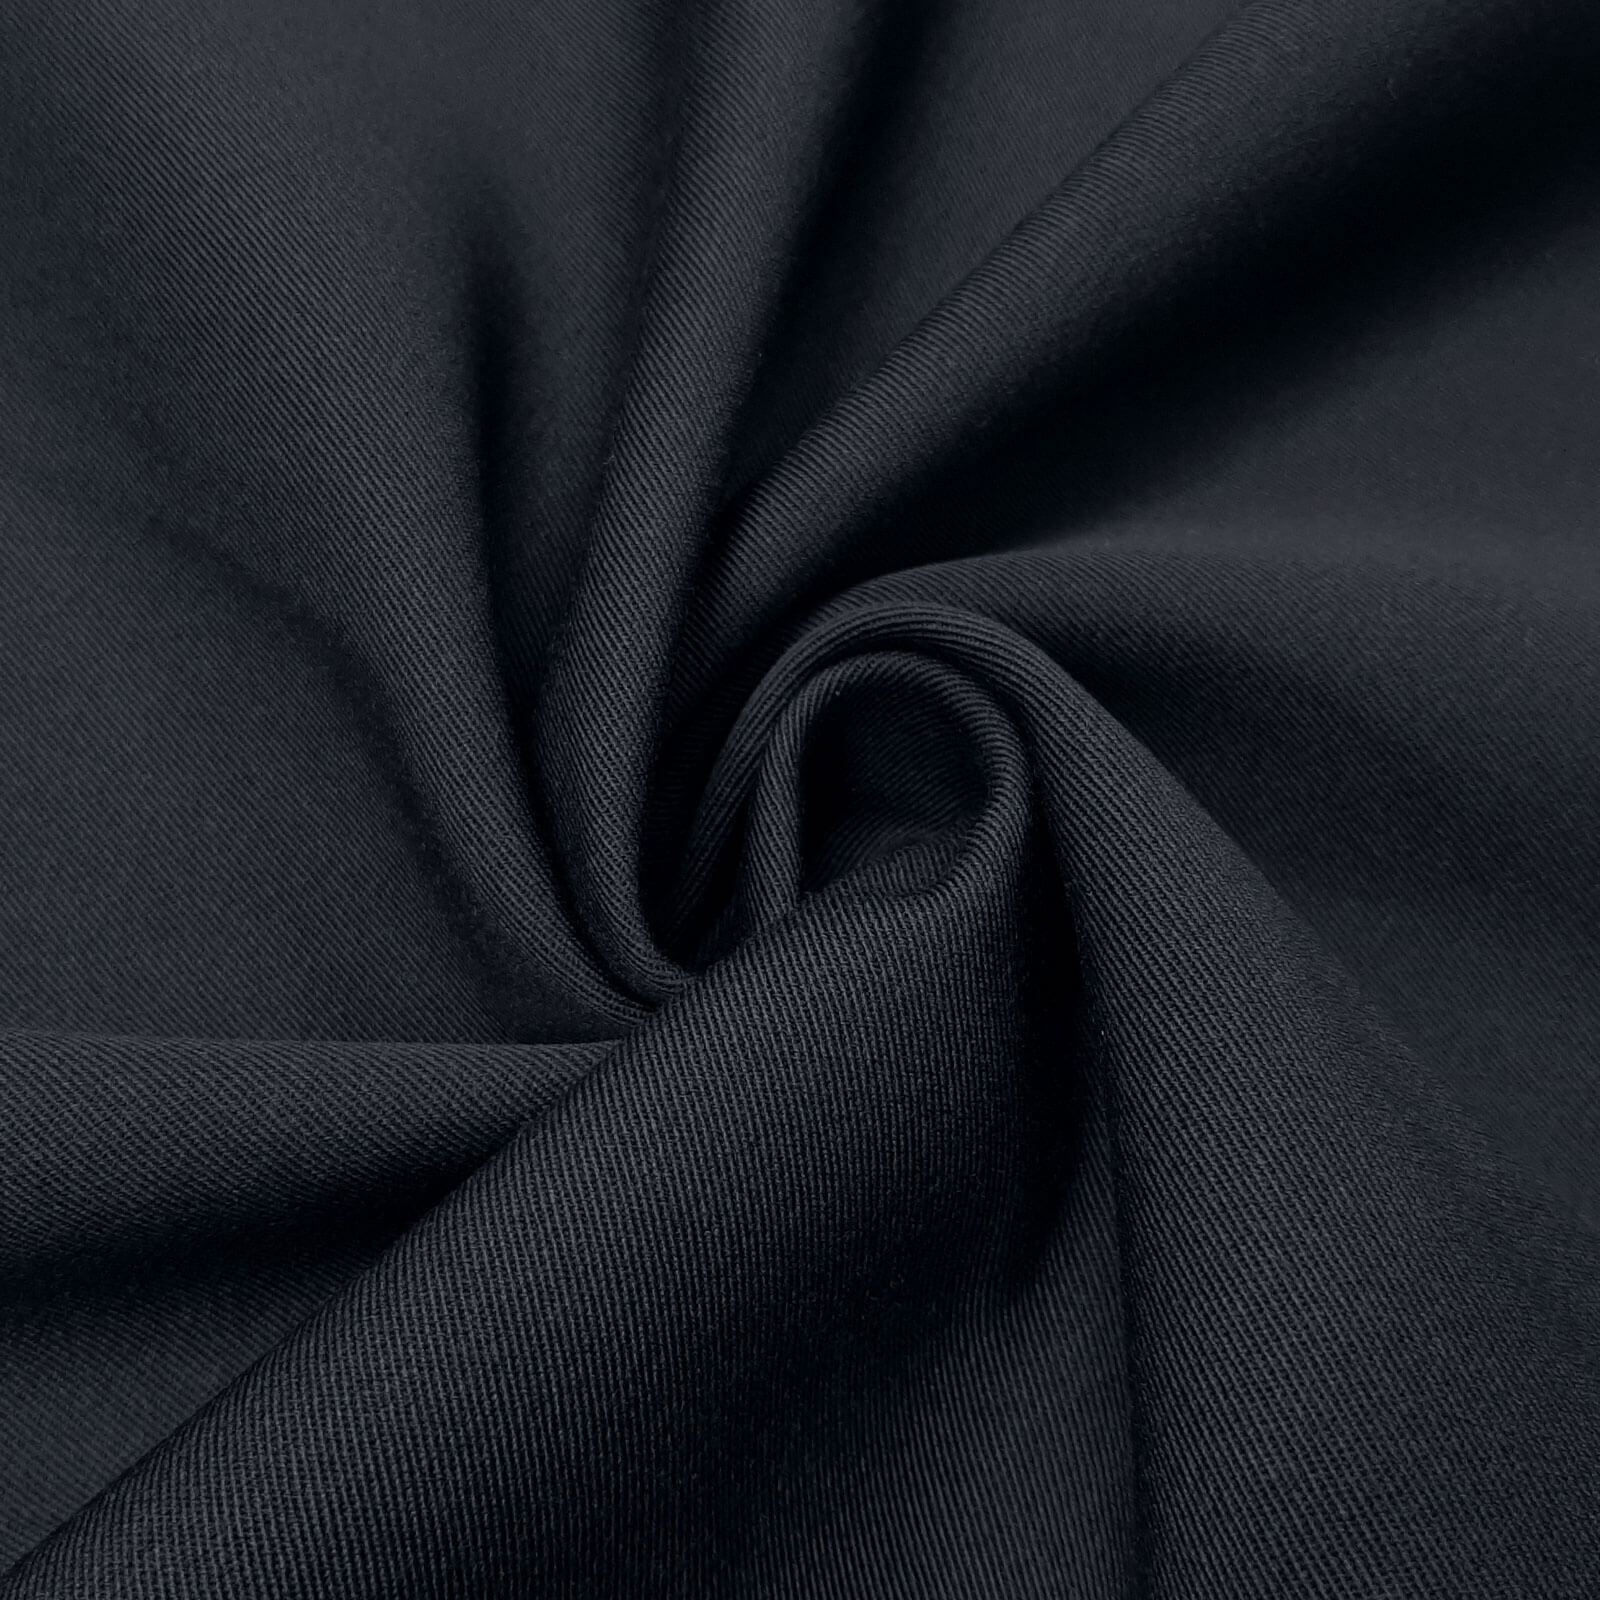 Franziska - paño de lana 100% lana virgen / paño de uniforme – Marina